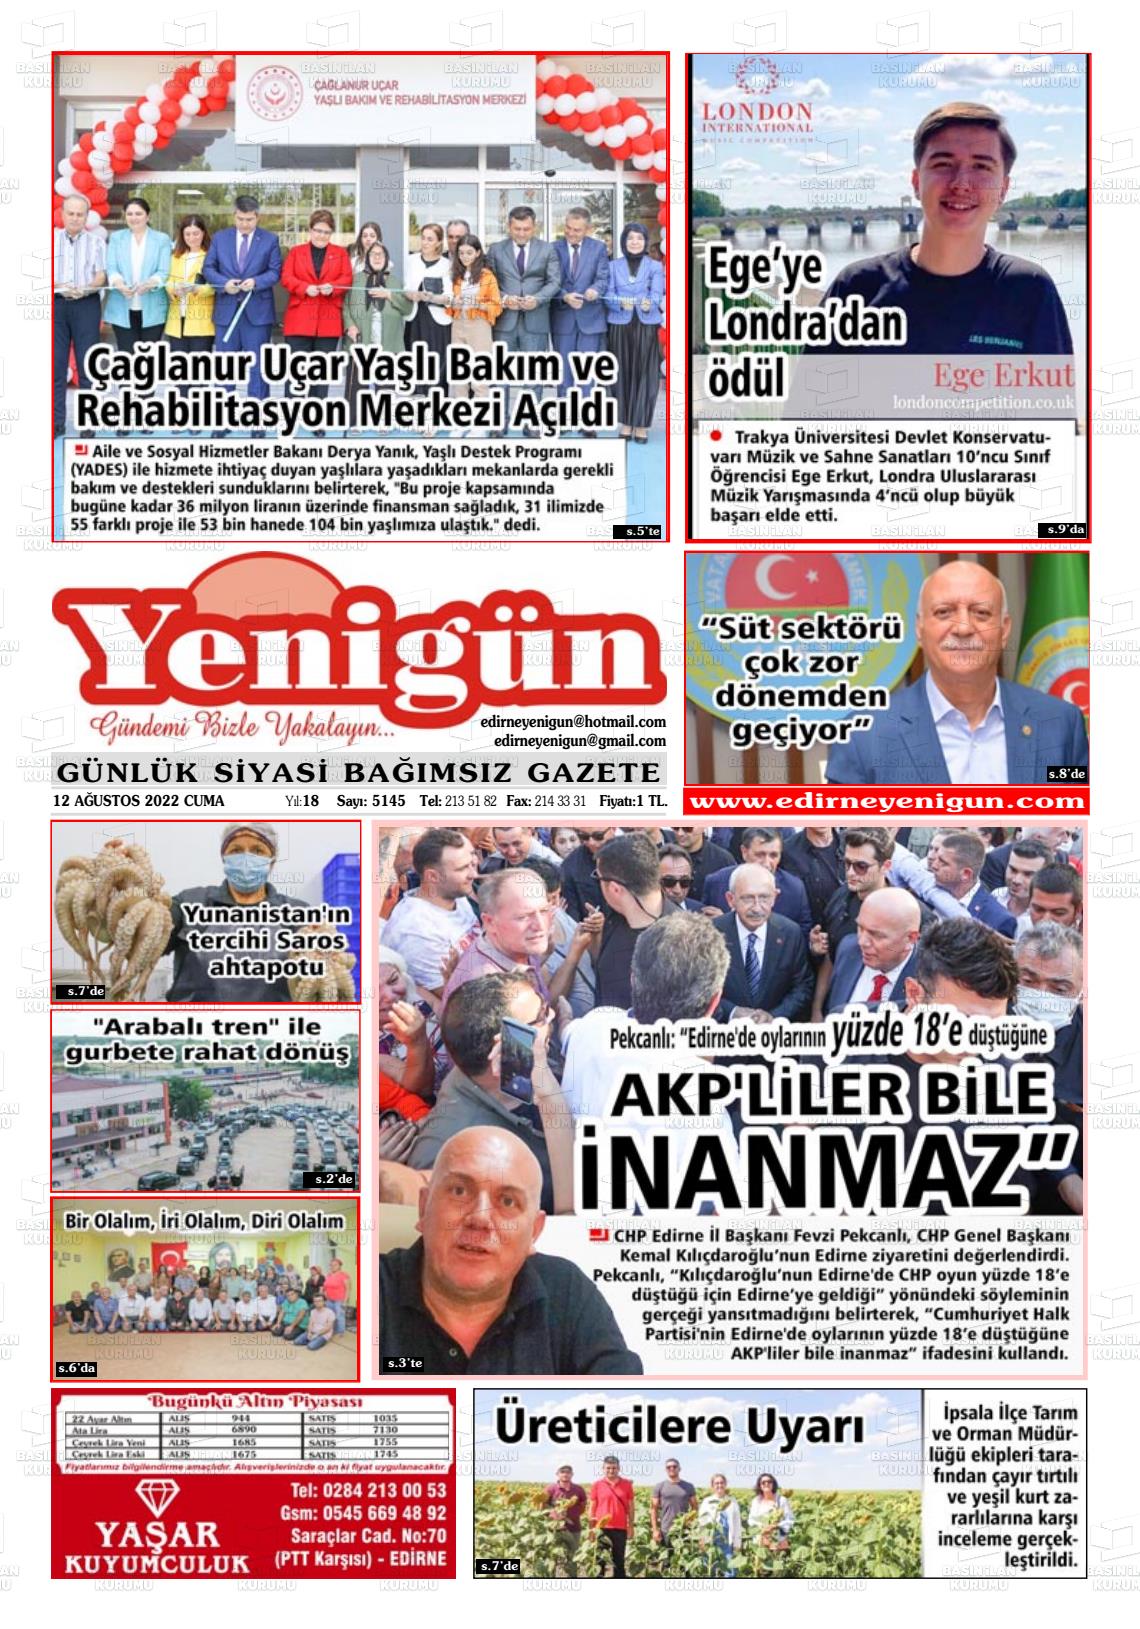 12 Ağustos 2022 Edirne Yenigün Gazete Manşeti